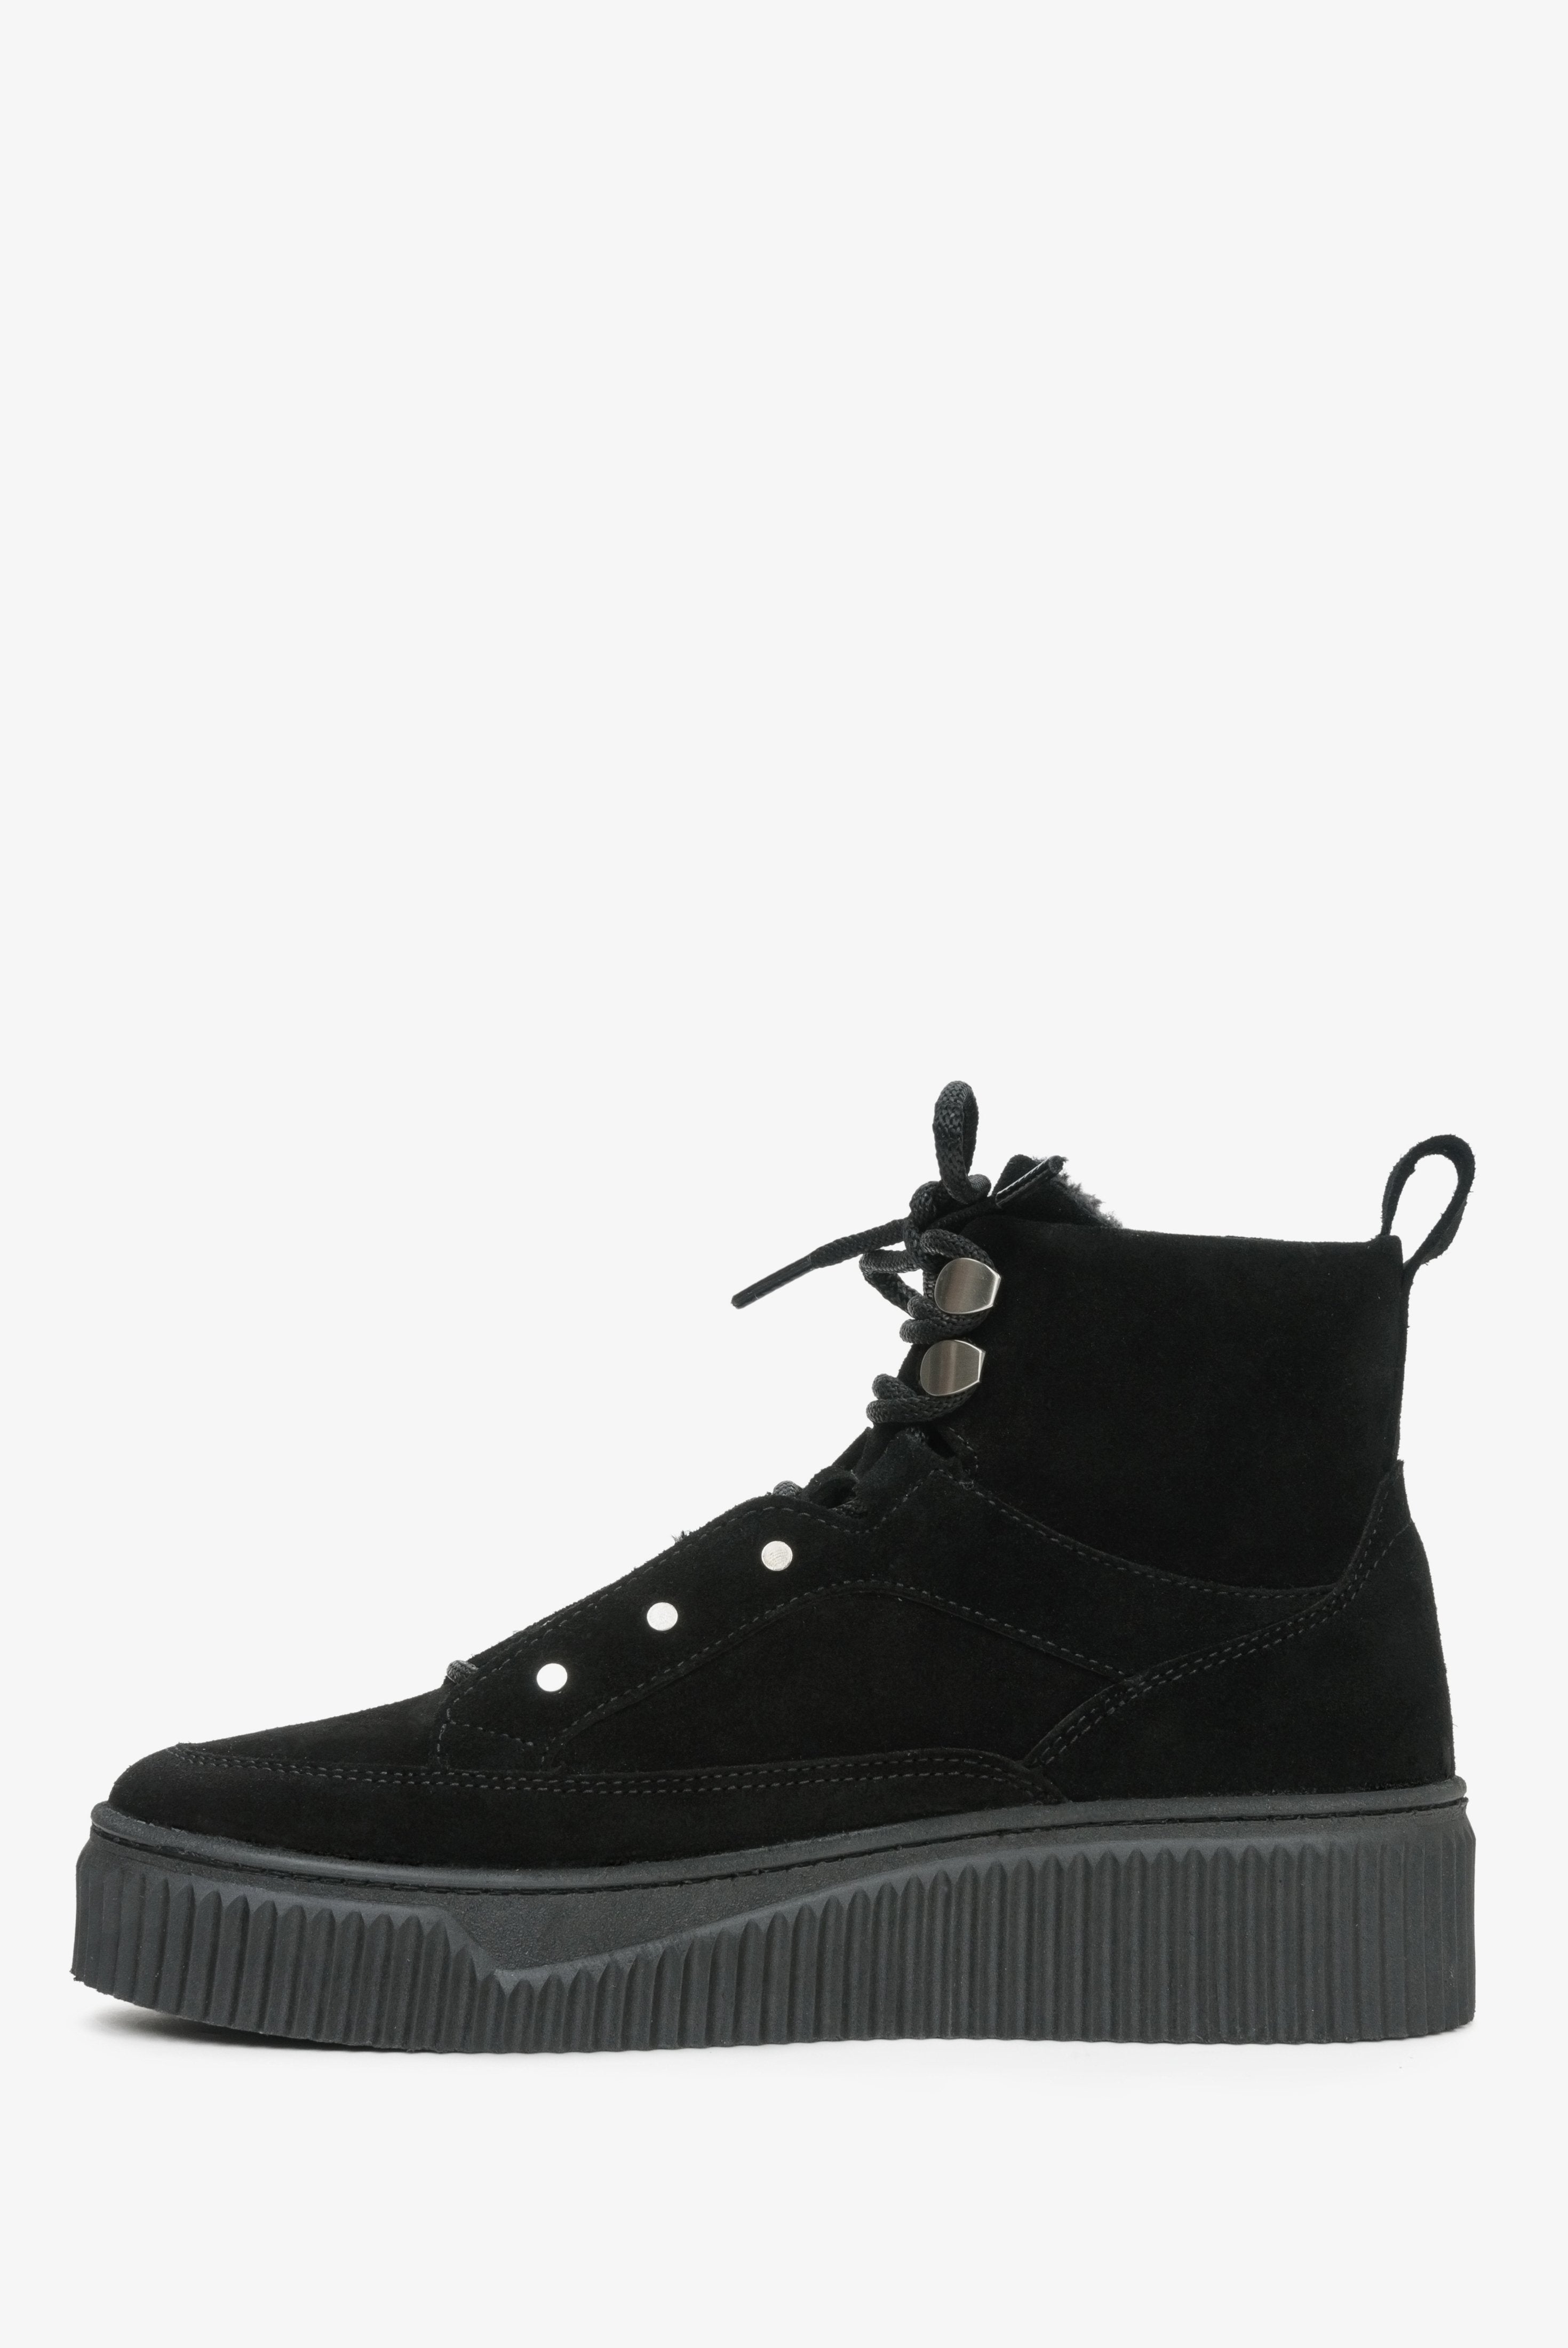 Wysokie sneakersy damskie z zamszu naturalnego na zimę w kolorze czarnym marki Estro.